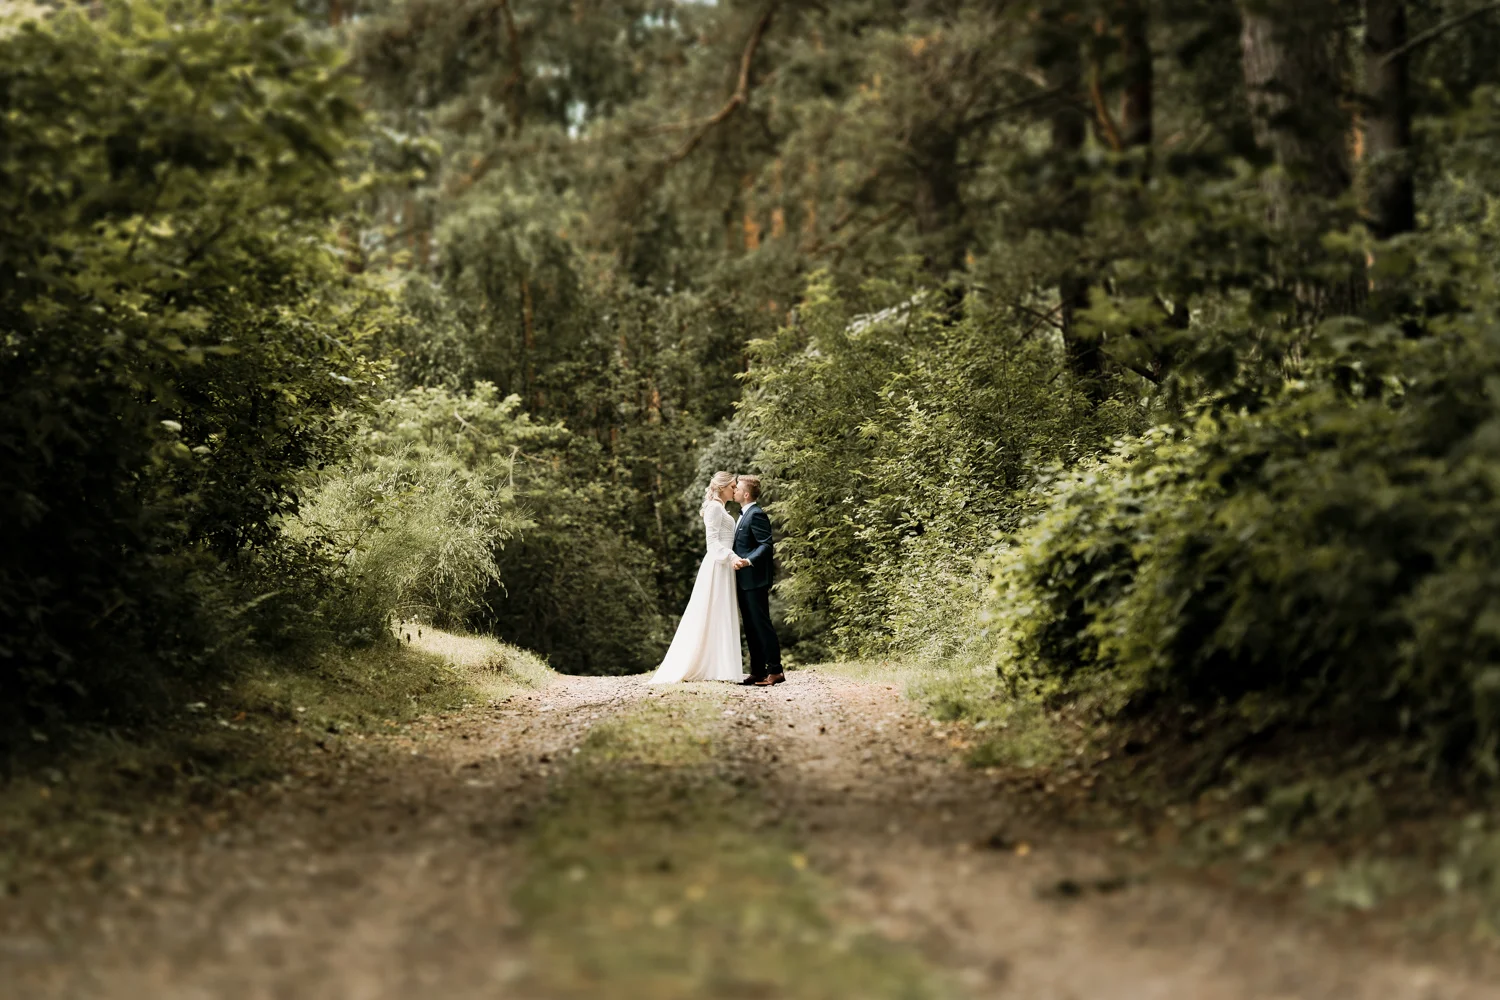 Rustic vestuvių fotosesija gamtoje